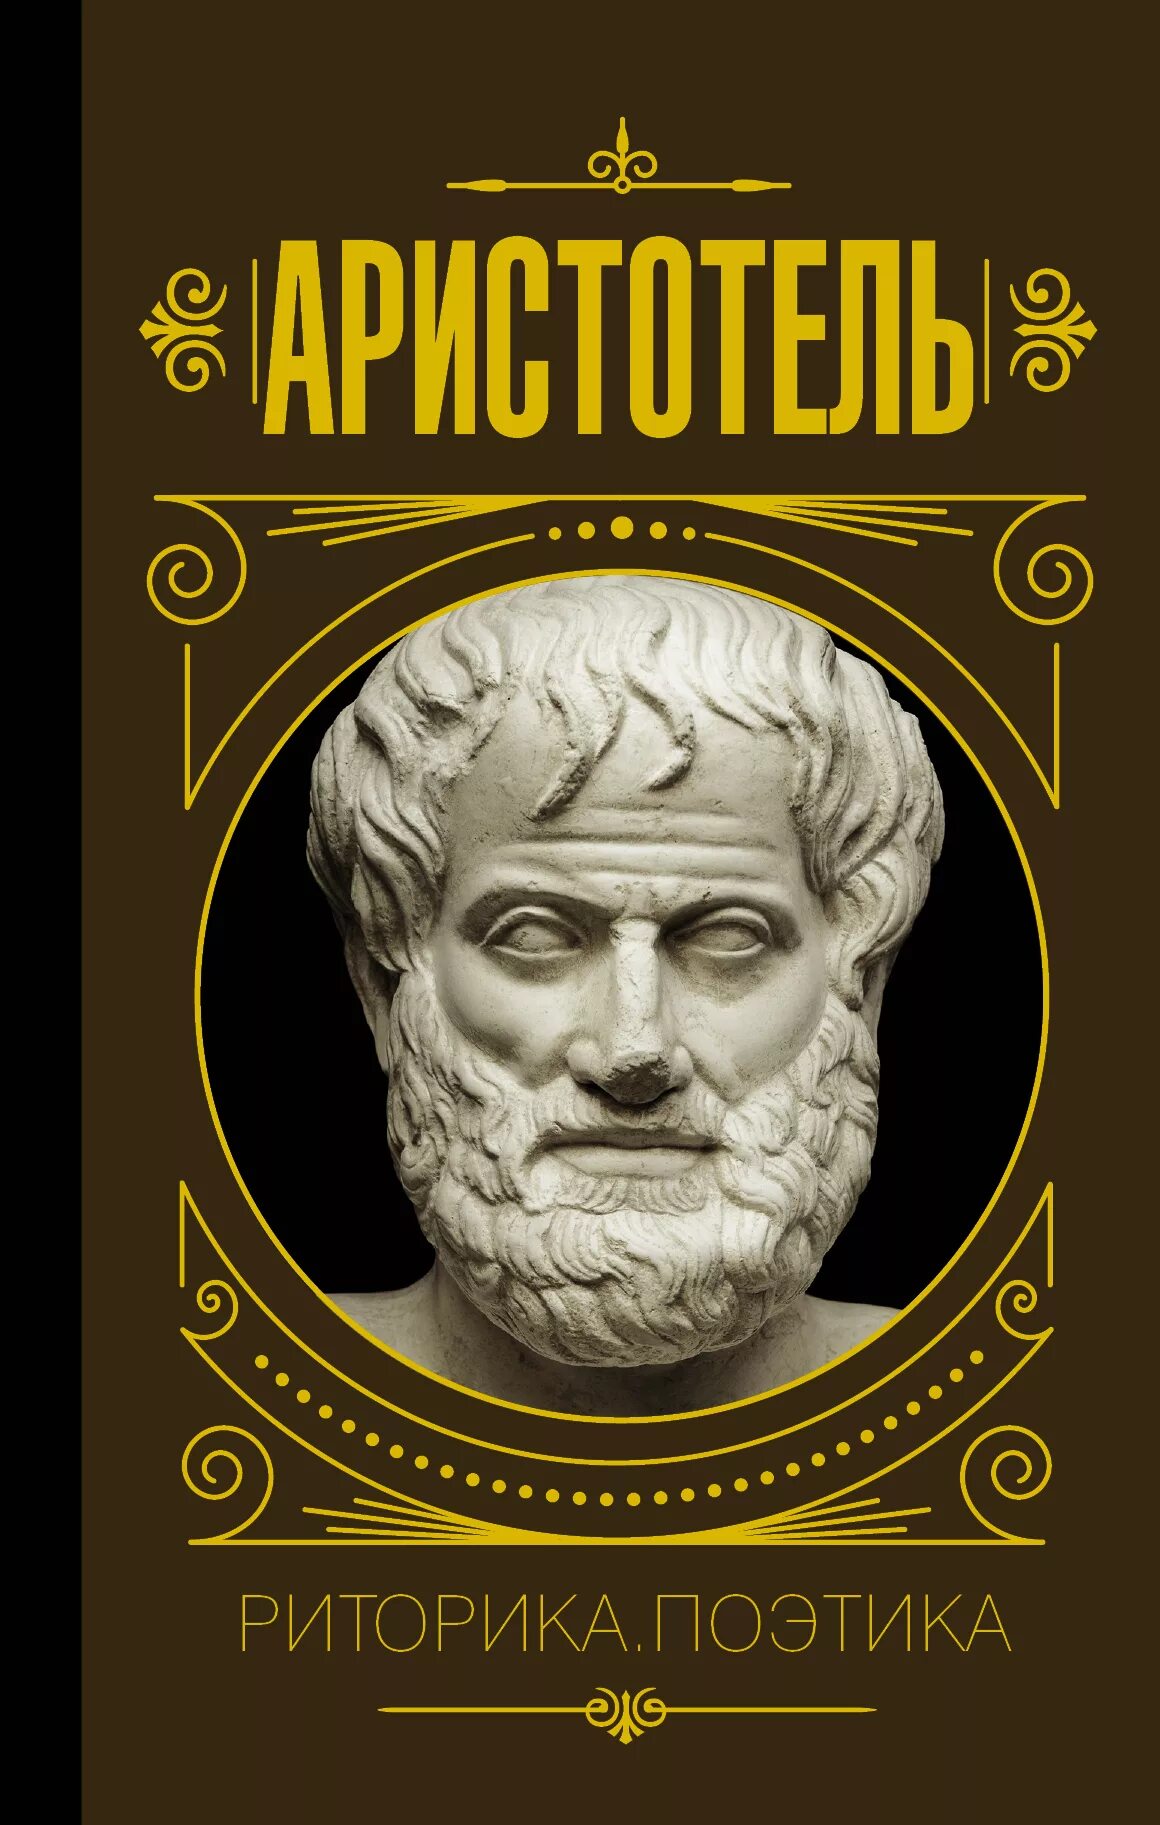 Аристотель "поэтика. Риторика". Книга риторика (Аристотель). Аристотель риторика и поэтика книга. Трактат риторика Аристотеля. Аристотель книга 1